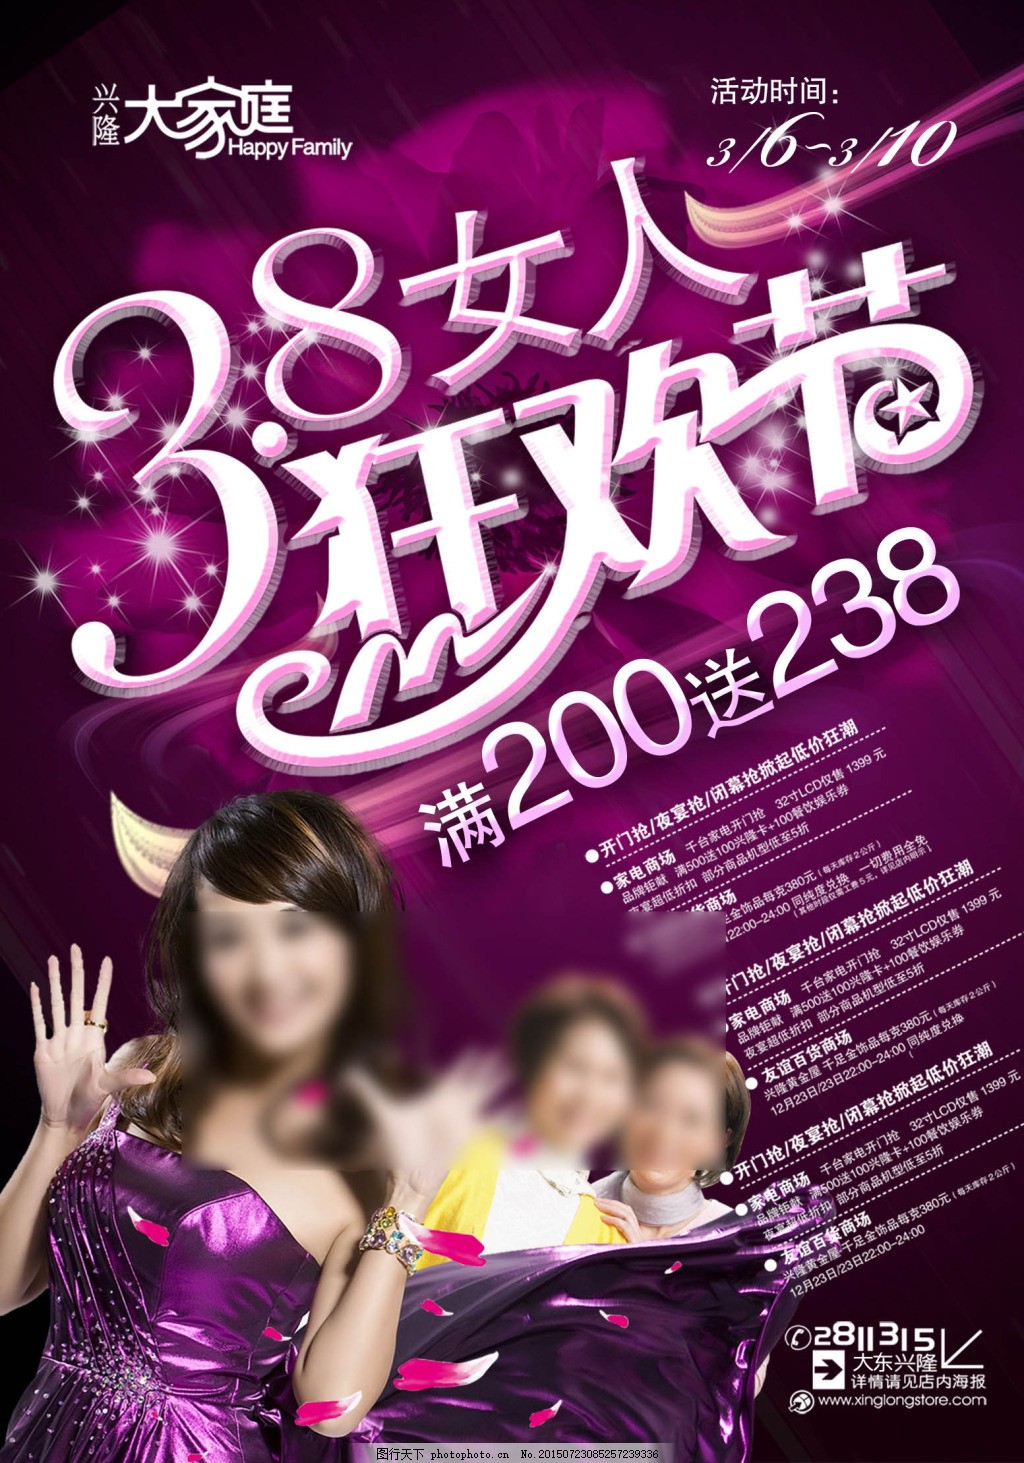 兴隆大家庭38女人狂欢节宣传海报,海报素材 广